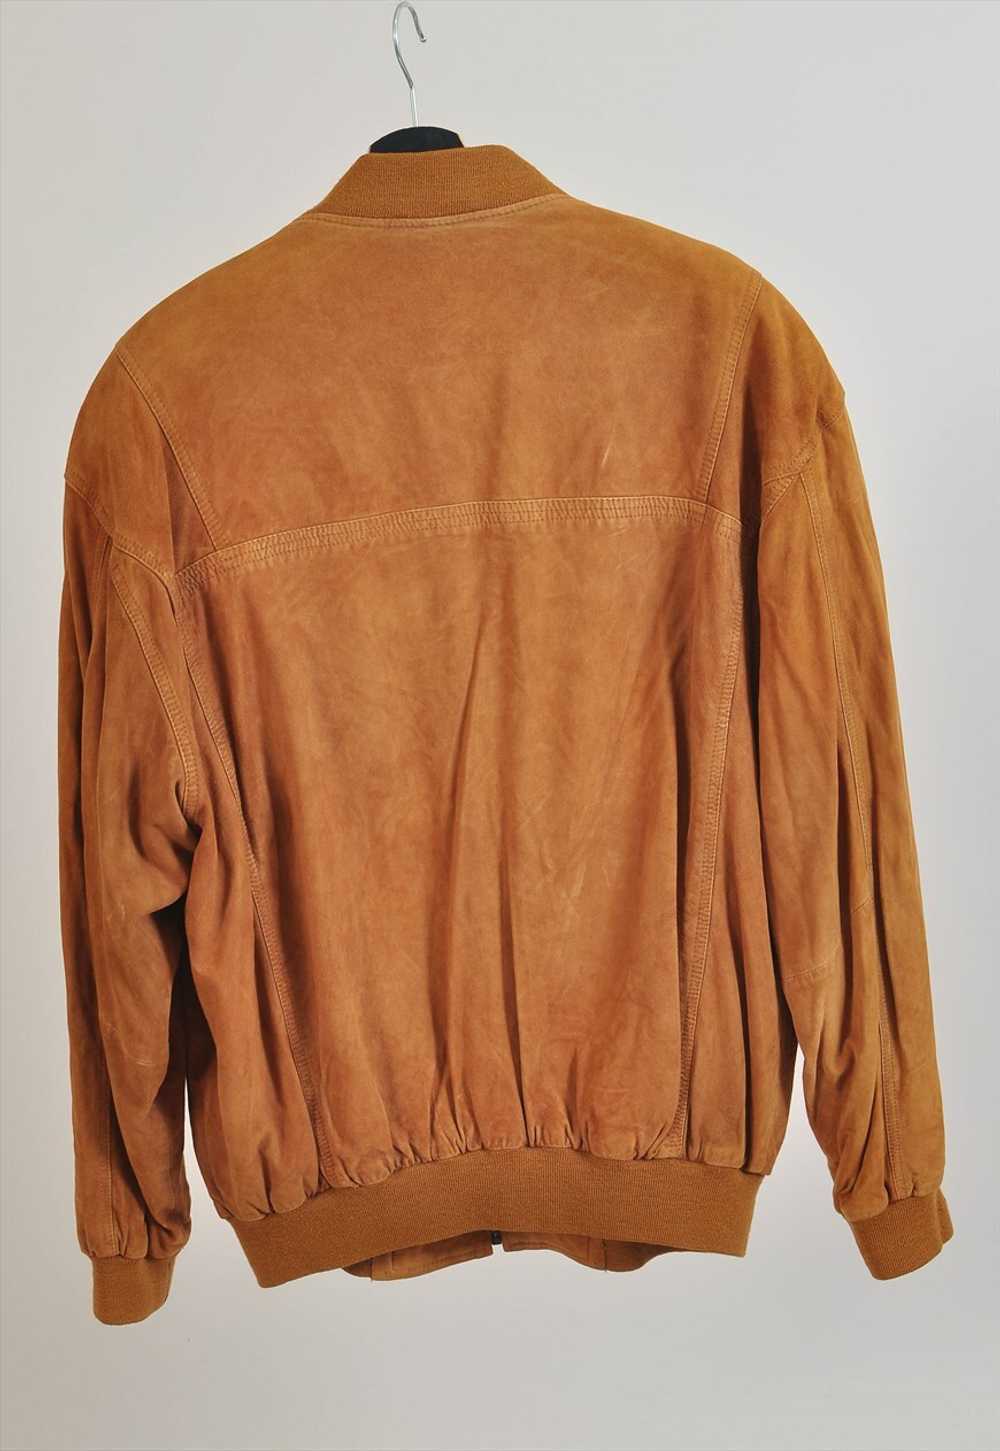 Vintage 90s Mc Gregor suede leather bomber jacket - image 2